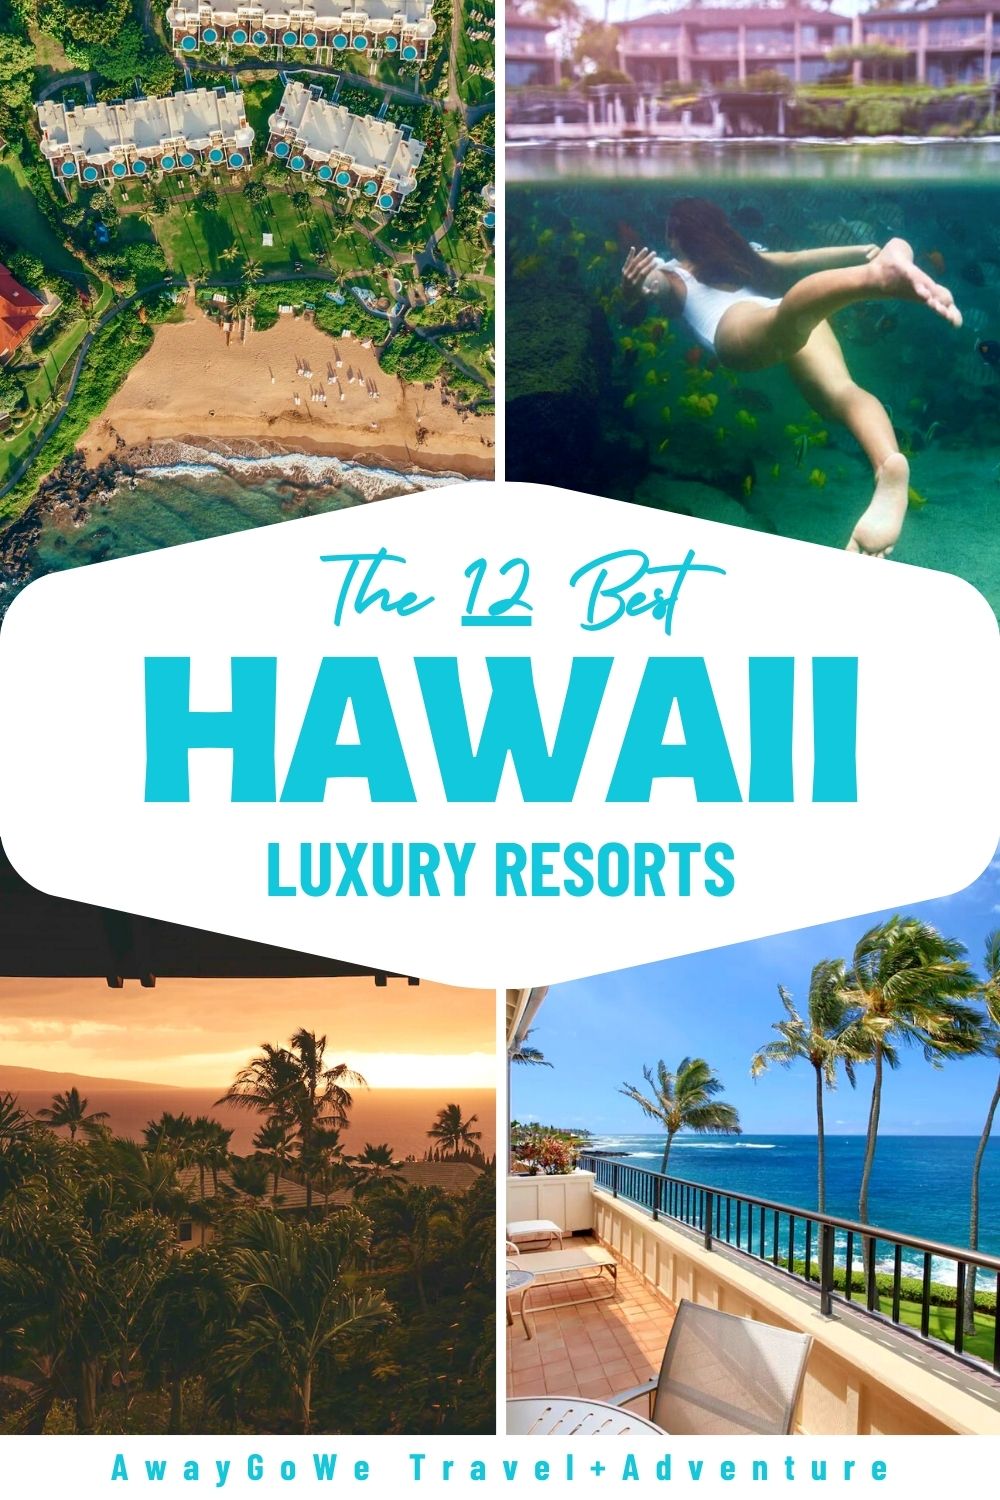 Hawaii resorts